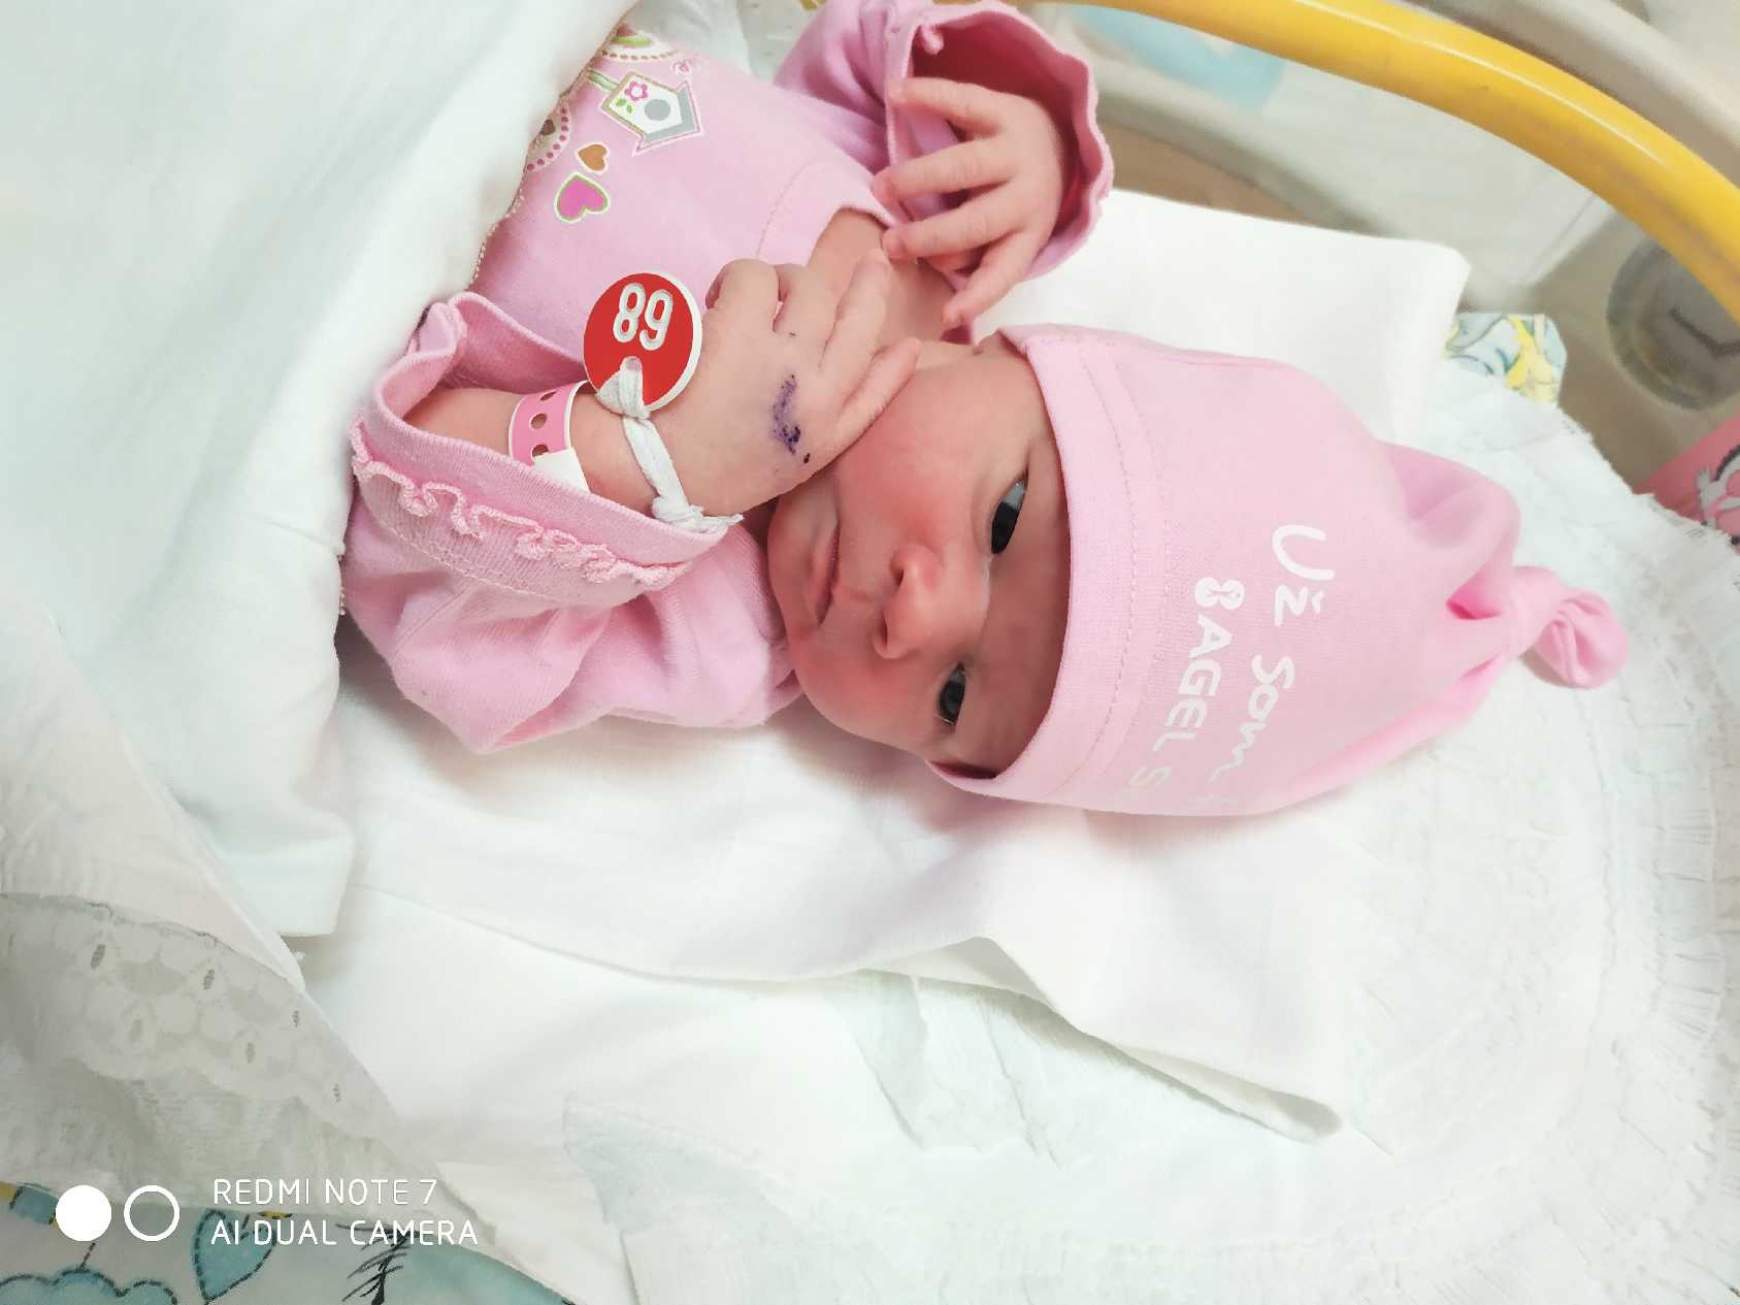 Tavaly 23 Covid-pozitív hölgy is szült a komáromi kórházban, ahol többségbe kerültek a lány babák